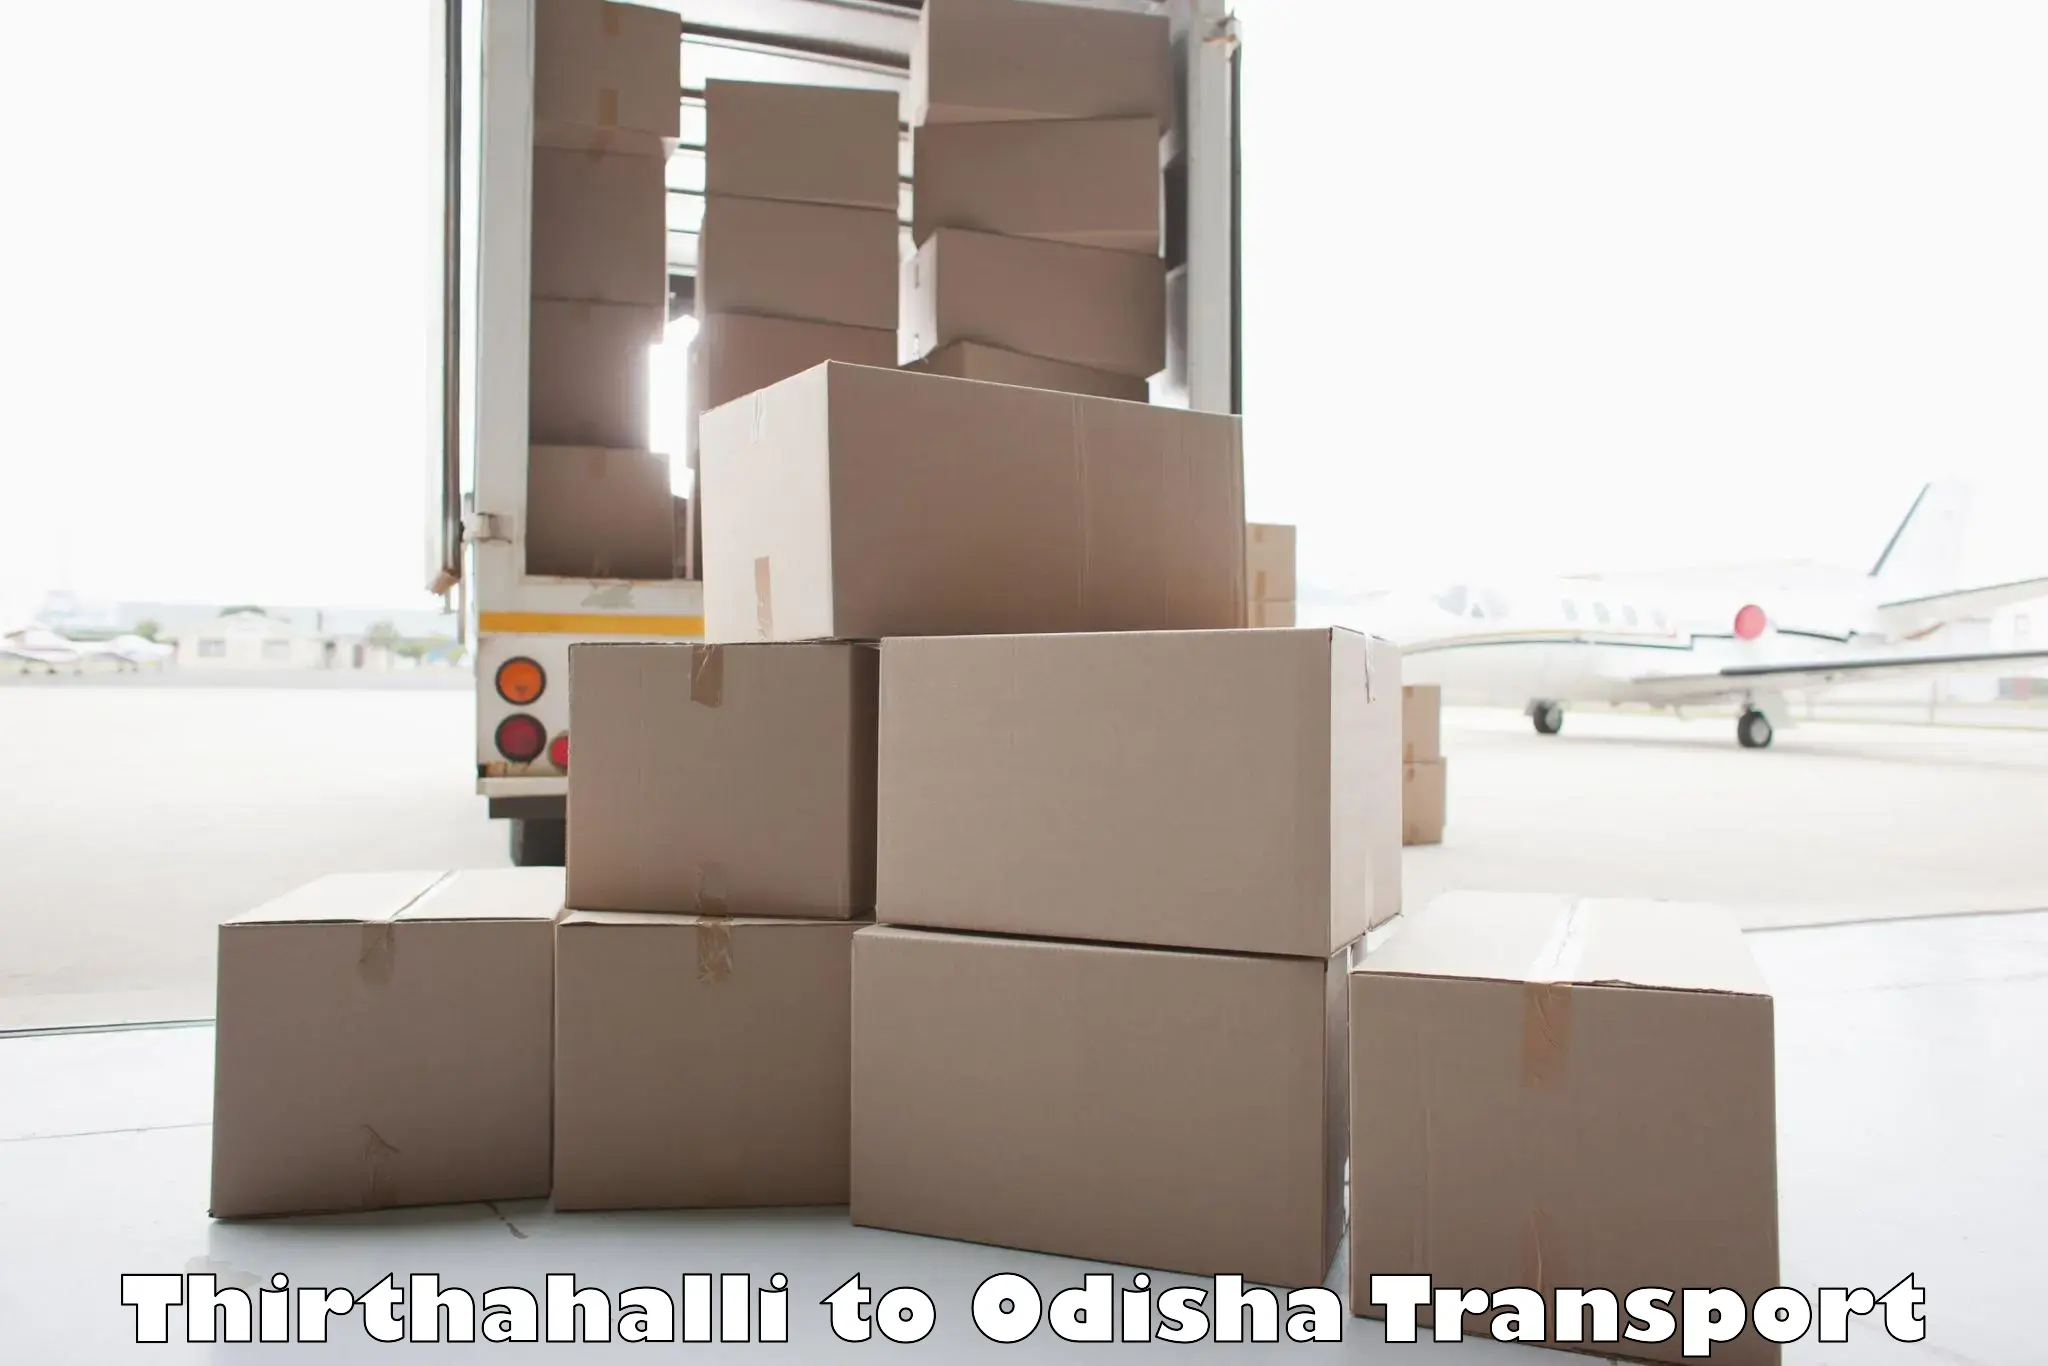 Cargo train transport services Thirthahalli to Telkoi